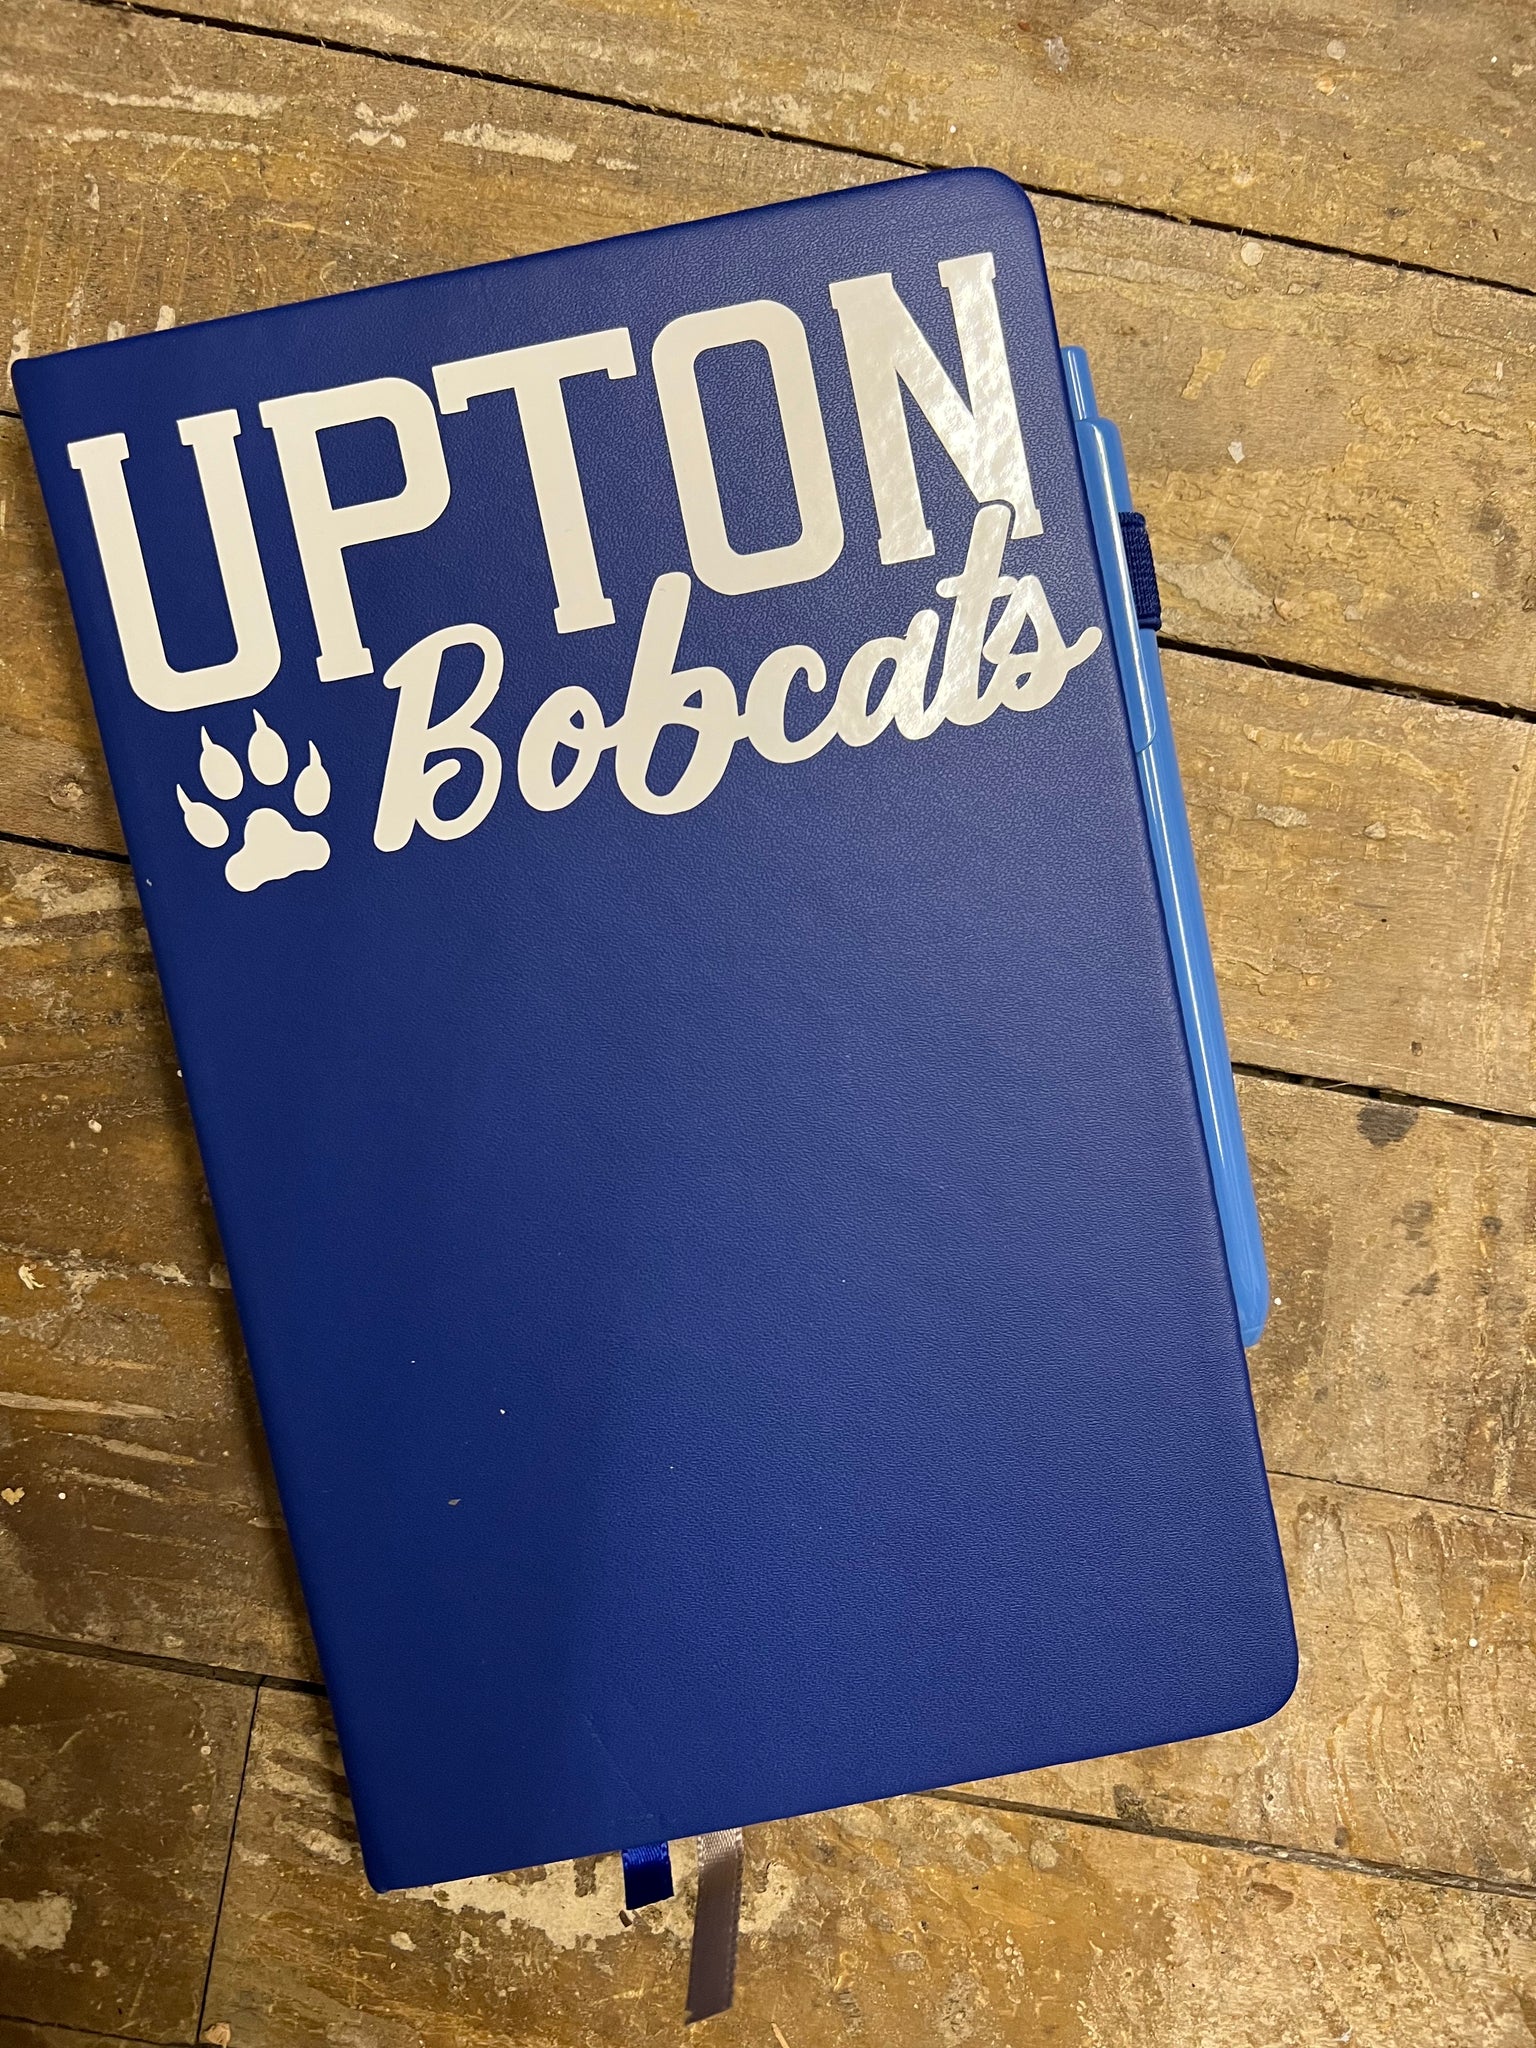 Bobcat Journal: UPTON Bobcats